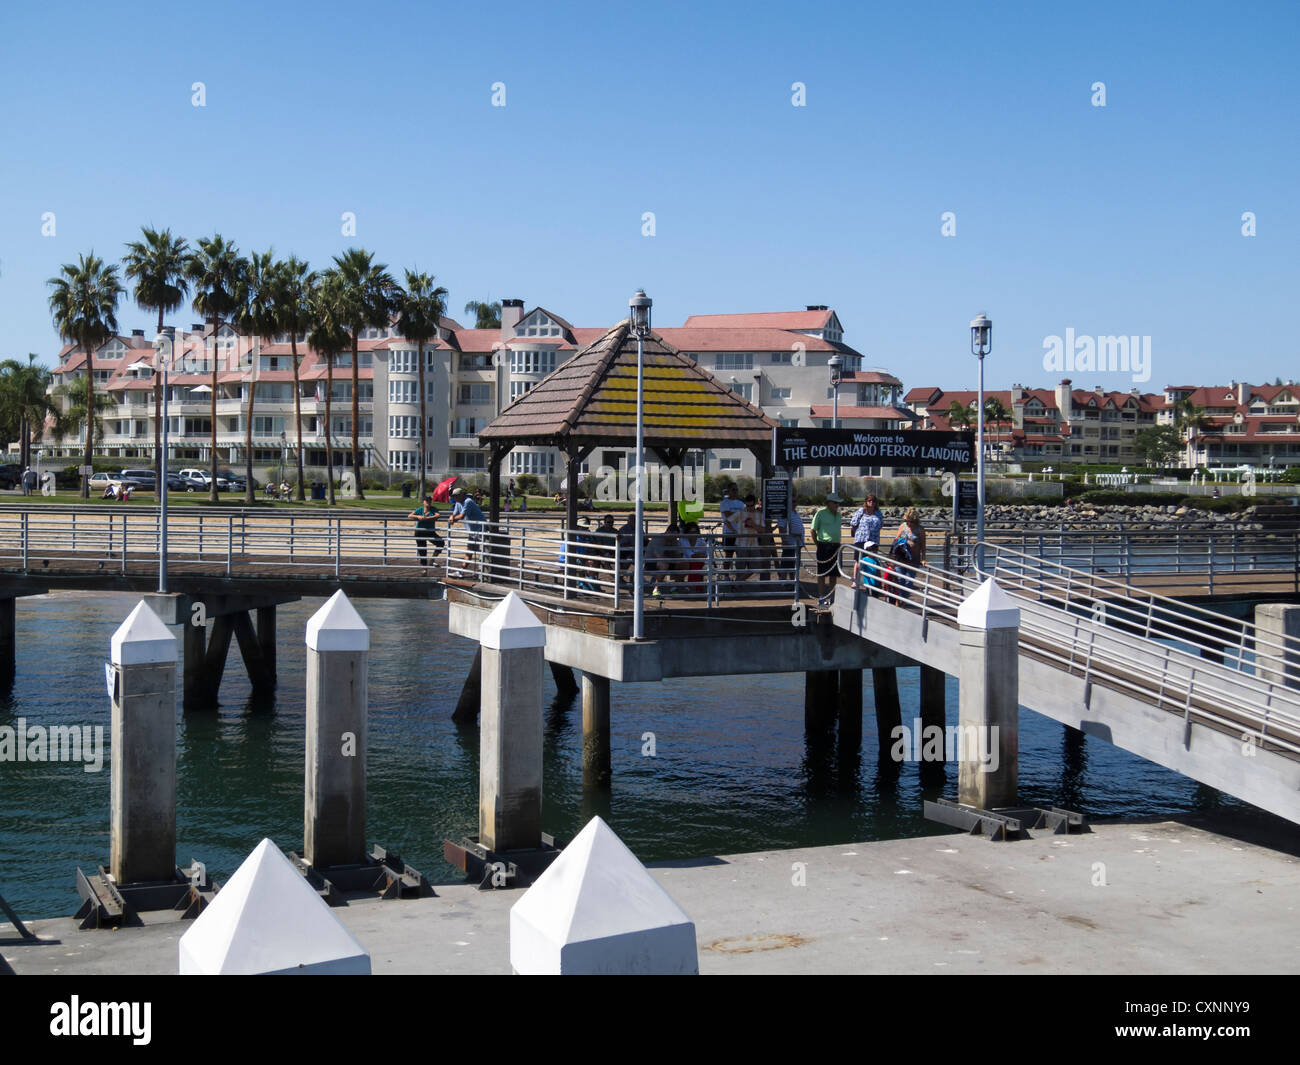 Coronado Island Ferry Pier, San Diego CA Foto Stock